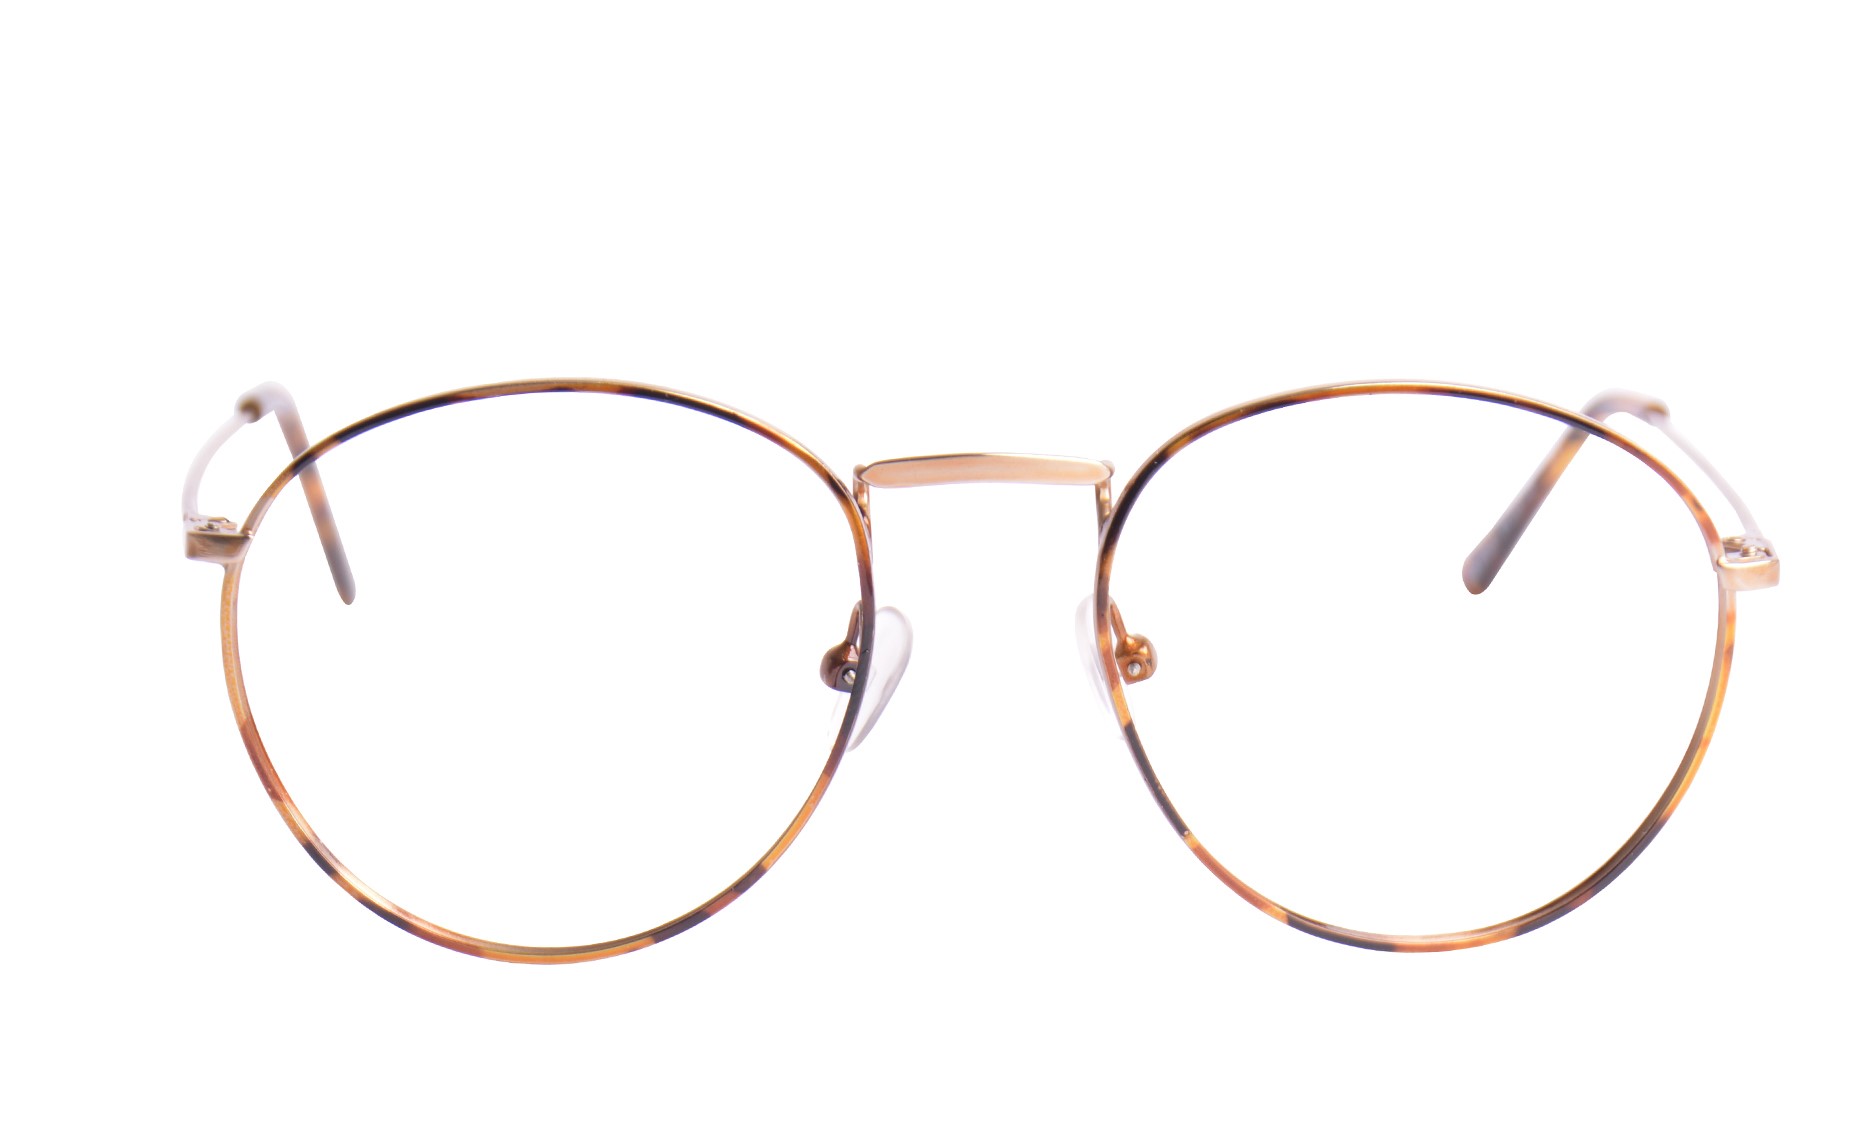 5 sinais que você precisa usar óculos